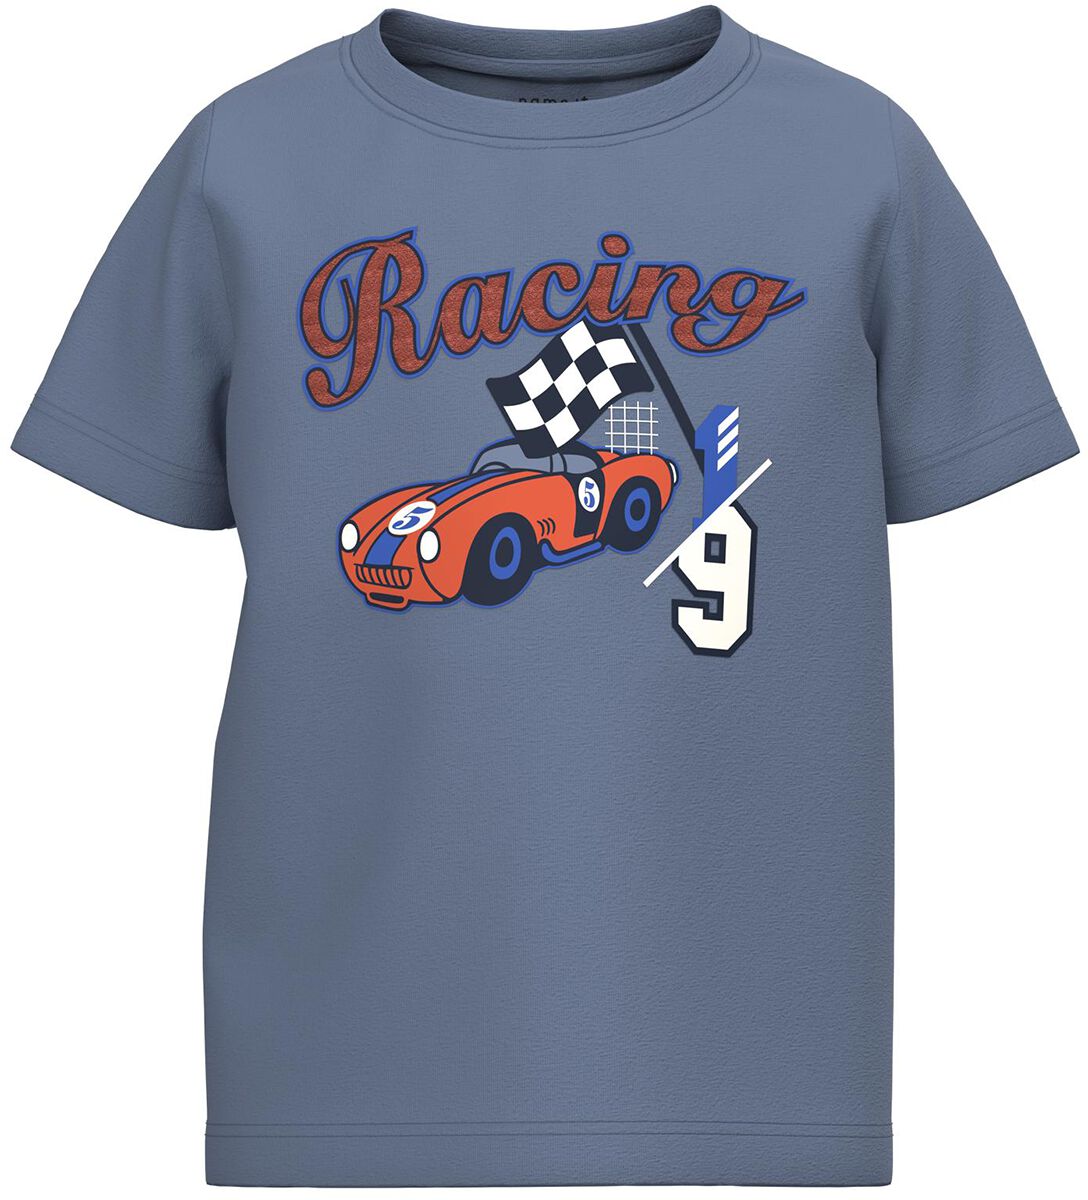 T-shirt de name it - Henne Shirt - Racing - 92 à 116 - pour garçons - bleu